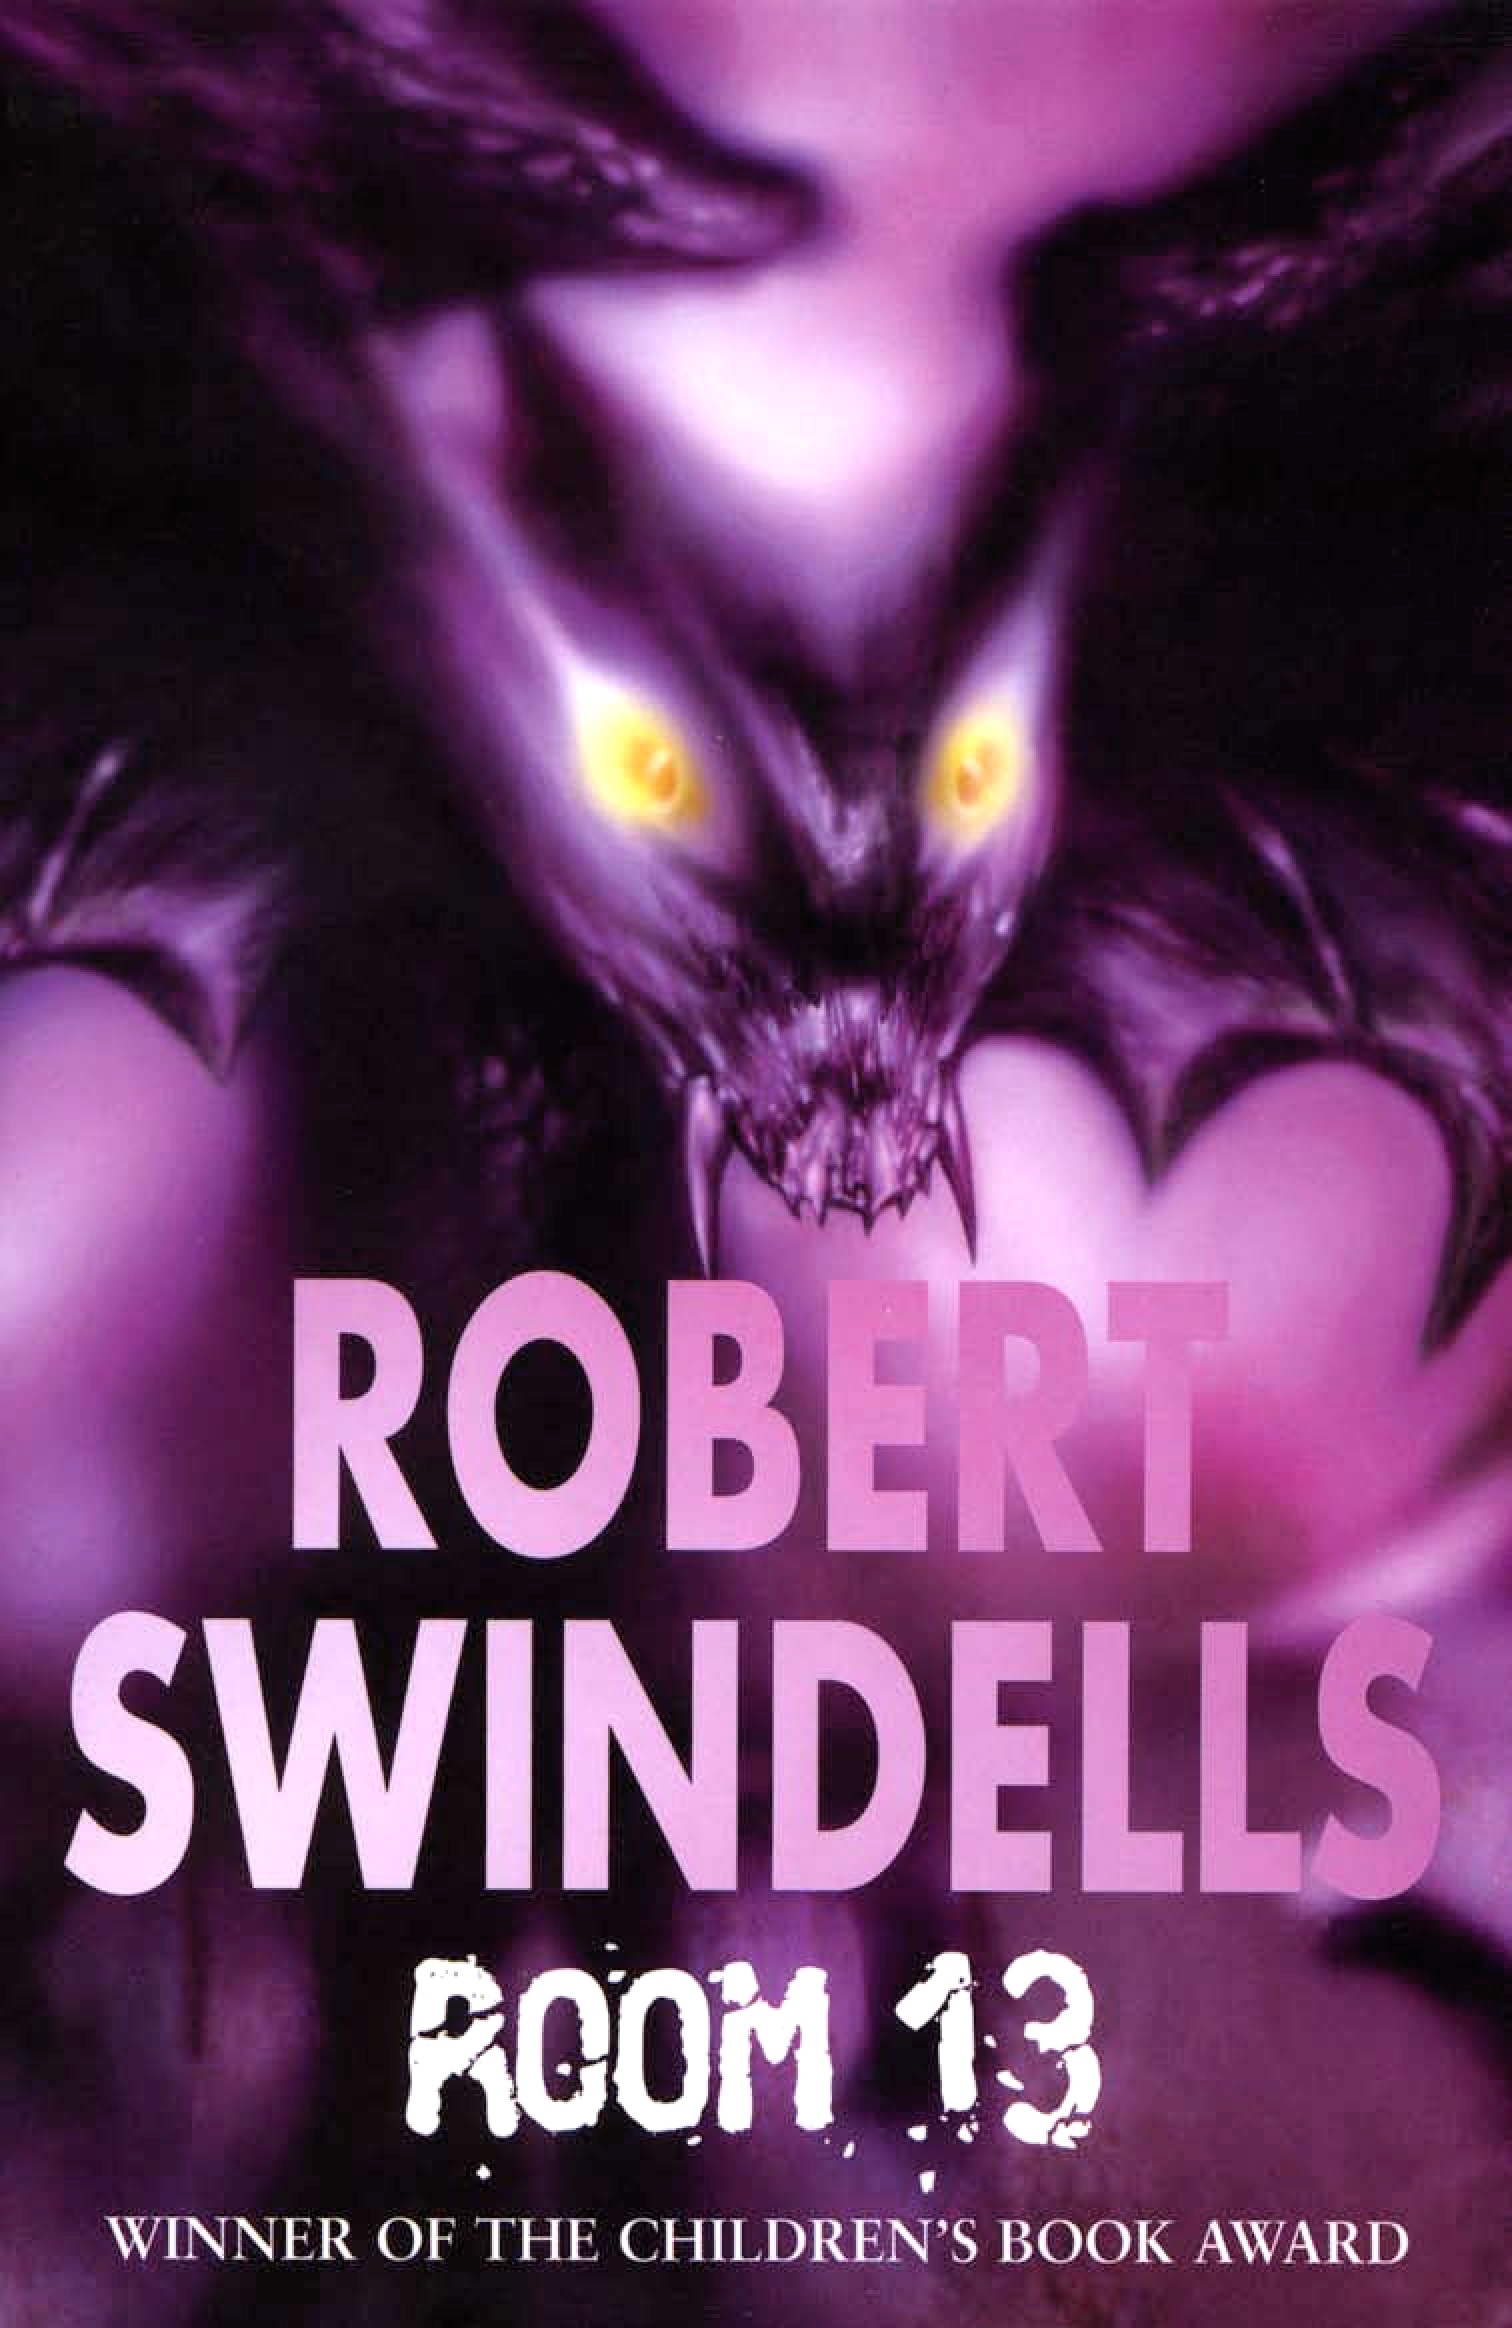 Book “Room 13” by Robert Swindells — October 26, 1990